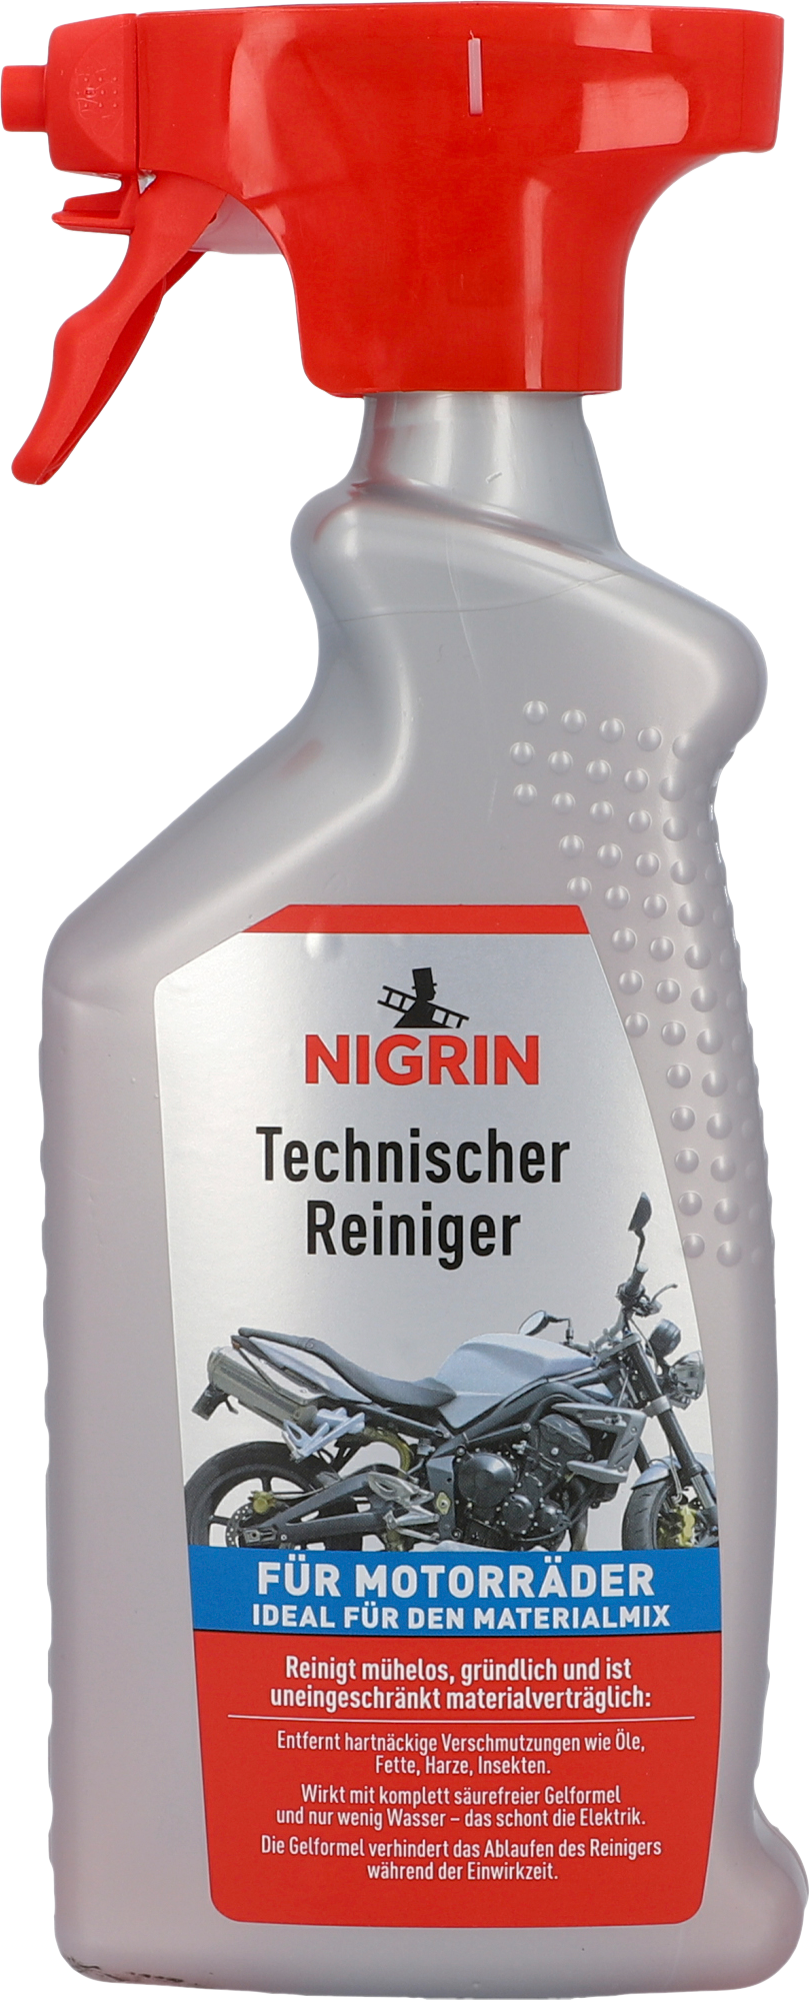 Nigrin Technischer Reiniger für Motorräder 500 ml